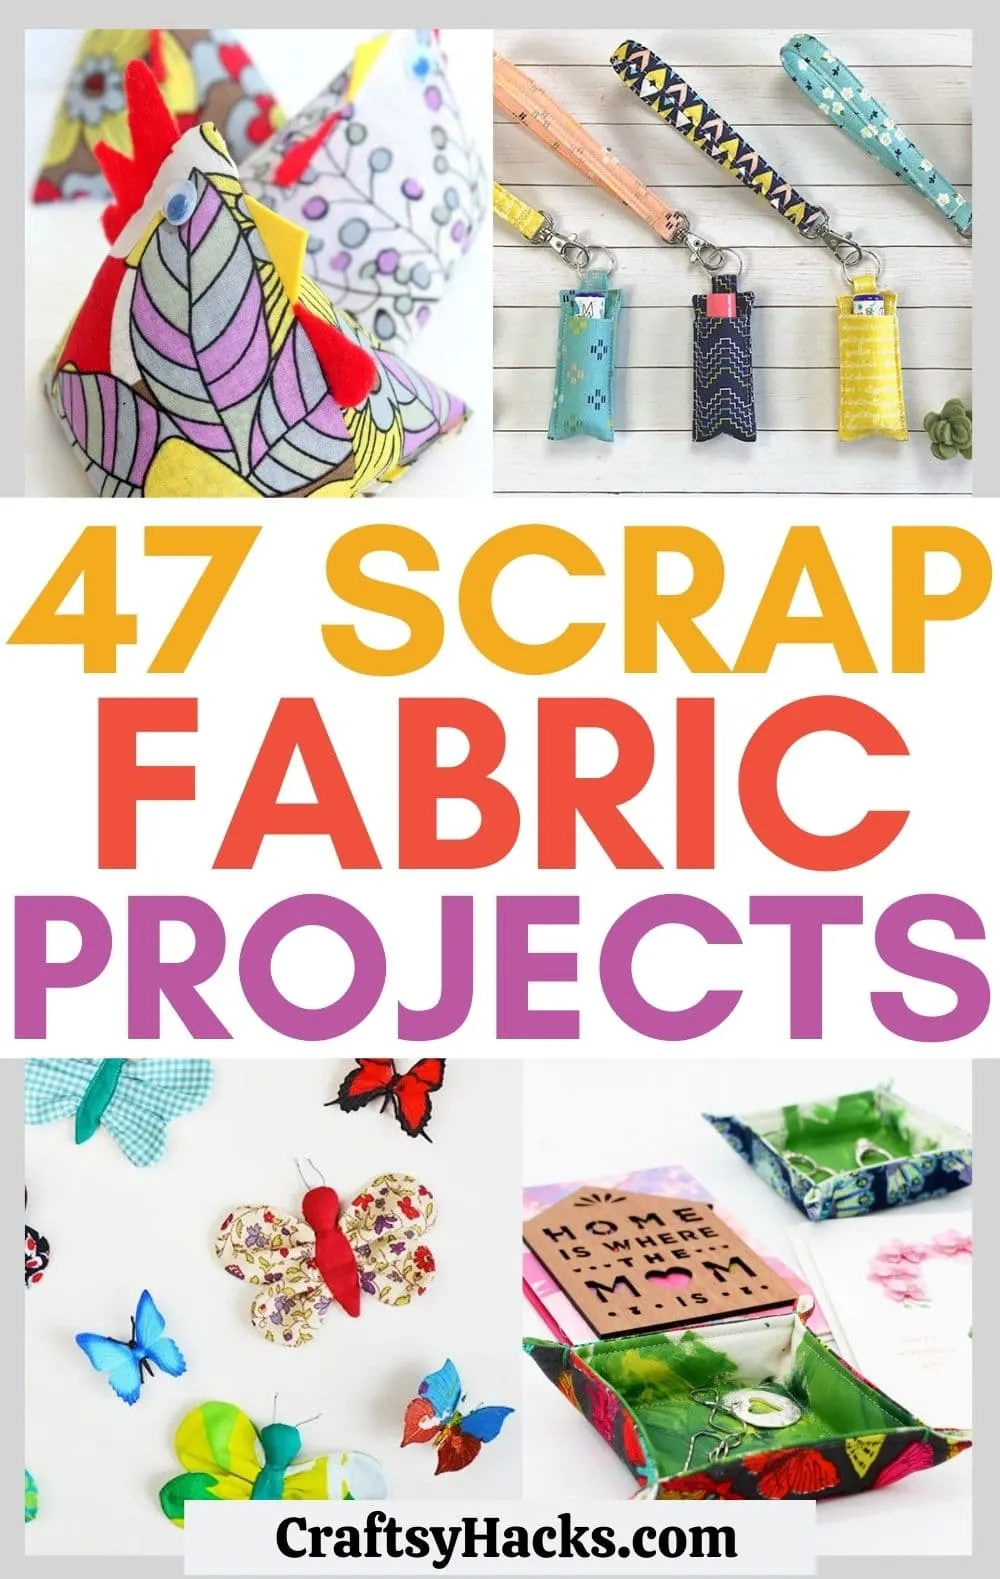 50 Creative Paper Bag Craft Ideas - FeltMagnet